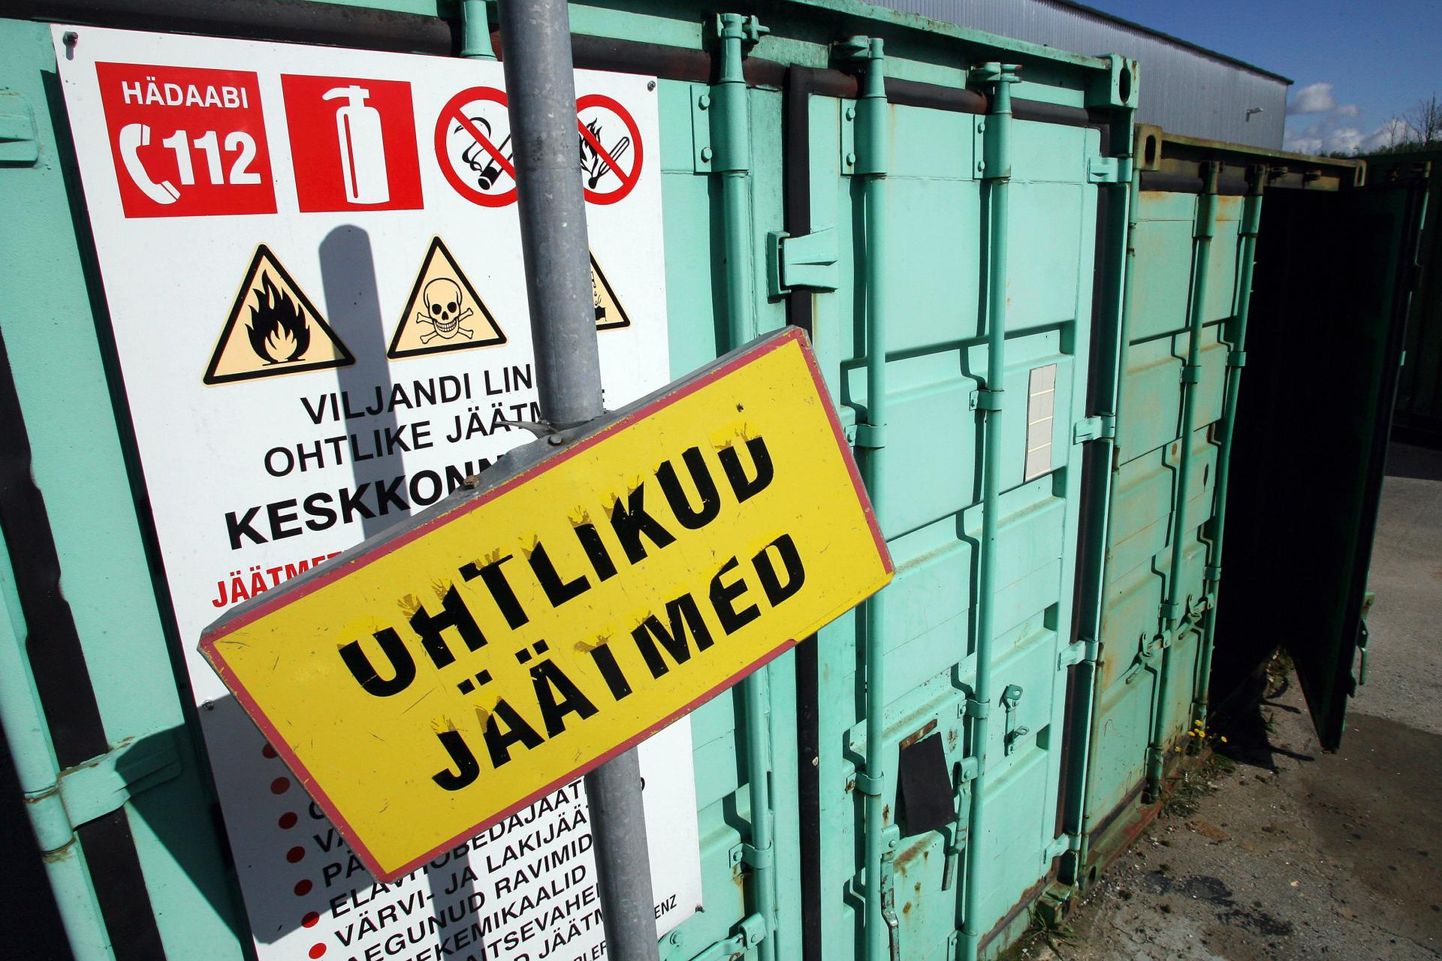 Juulis peetakse Viljandi jäätmejaama toodavate jäätmete üle arvestust mahu järgi.